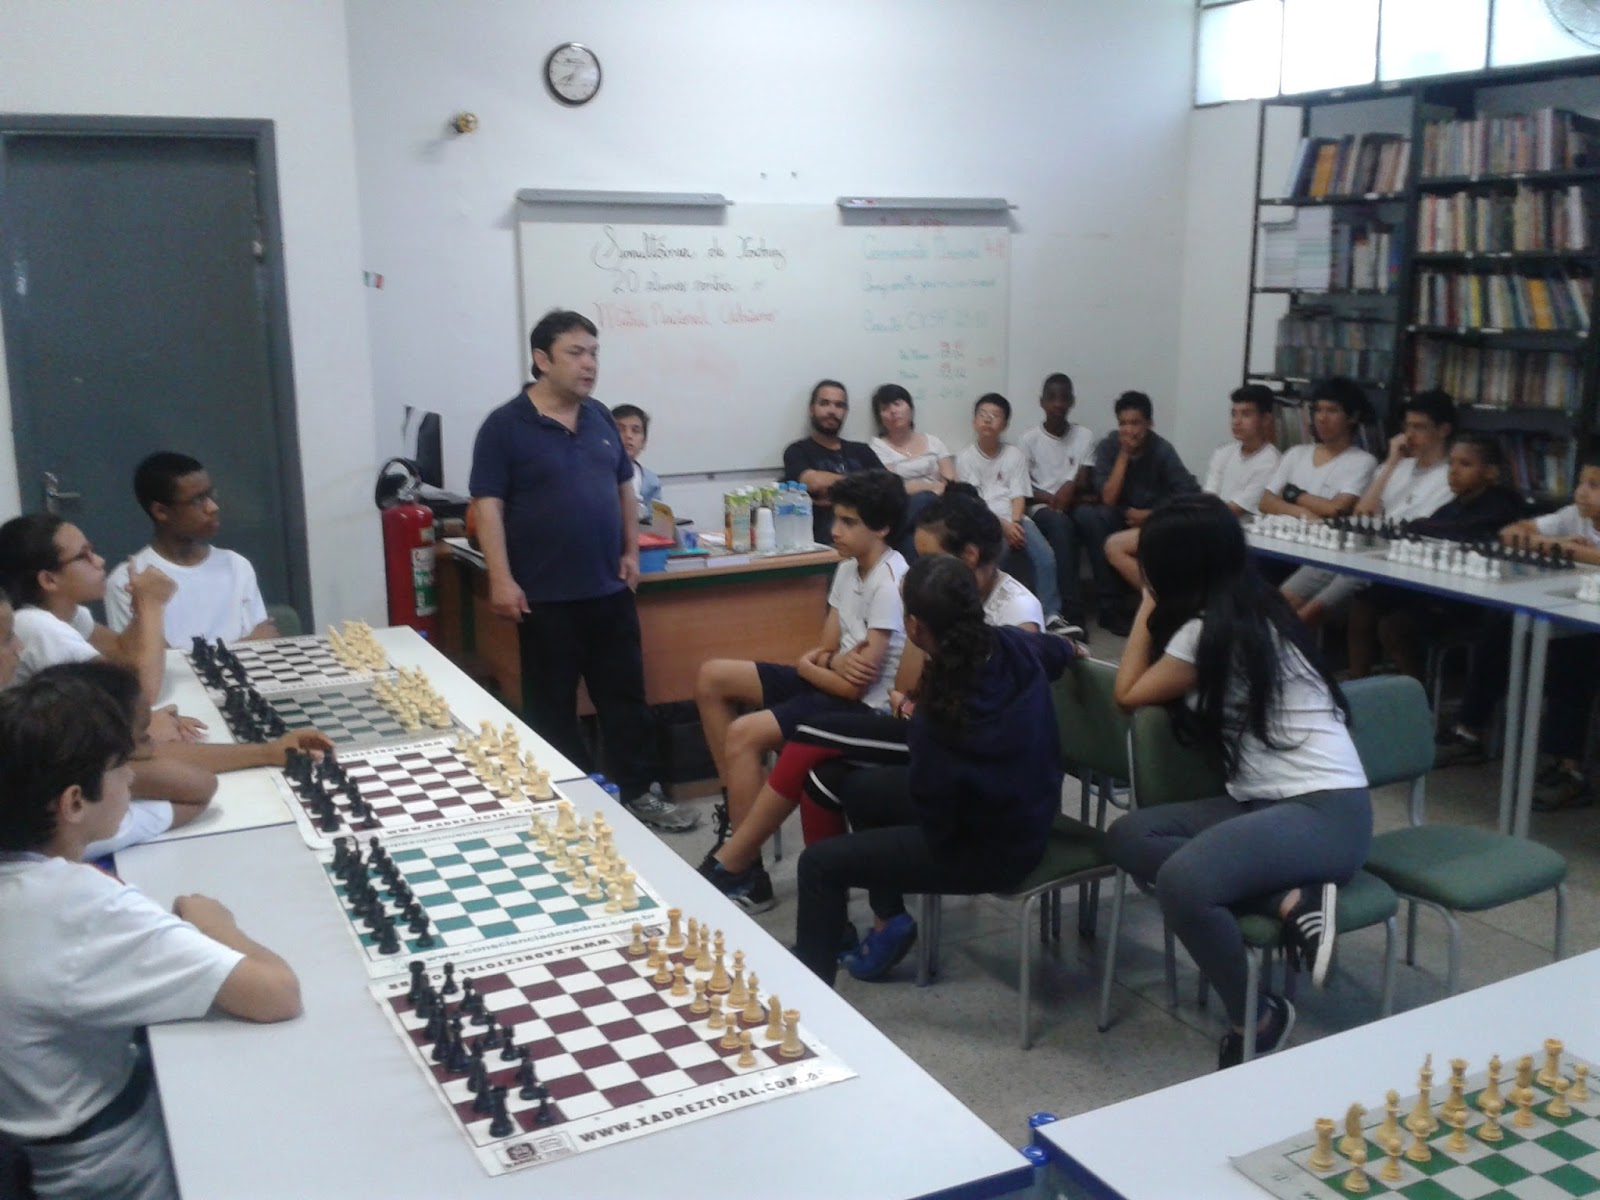 Kit Completo: A Magia Do Xadrez Na Escola, Adriano Caldeira, Ver Fotos